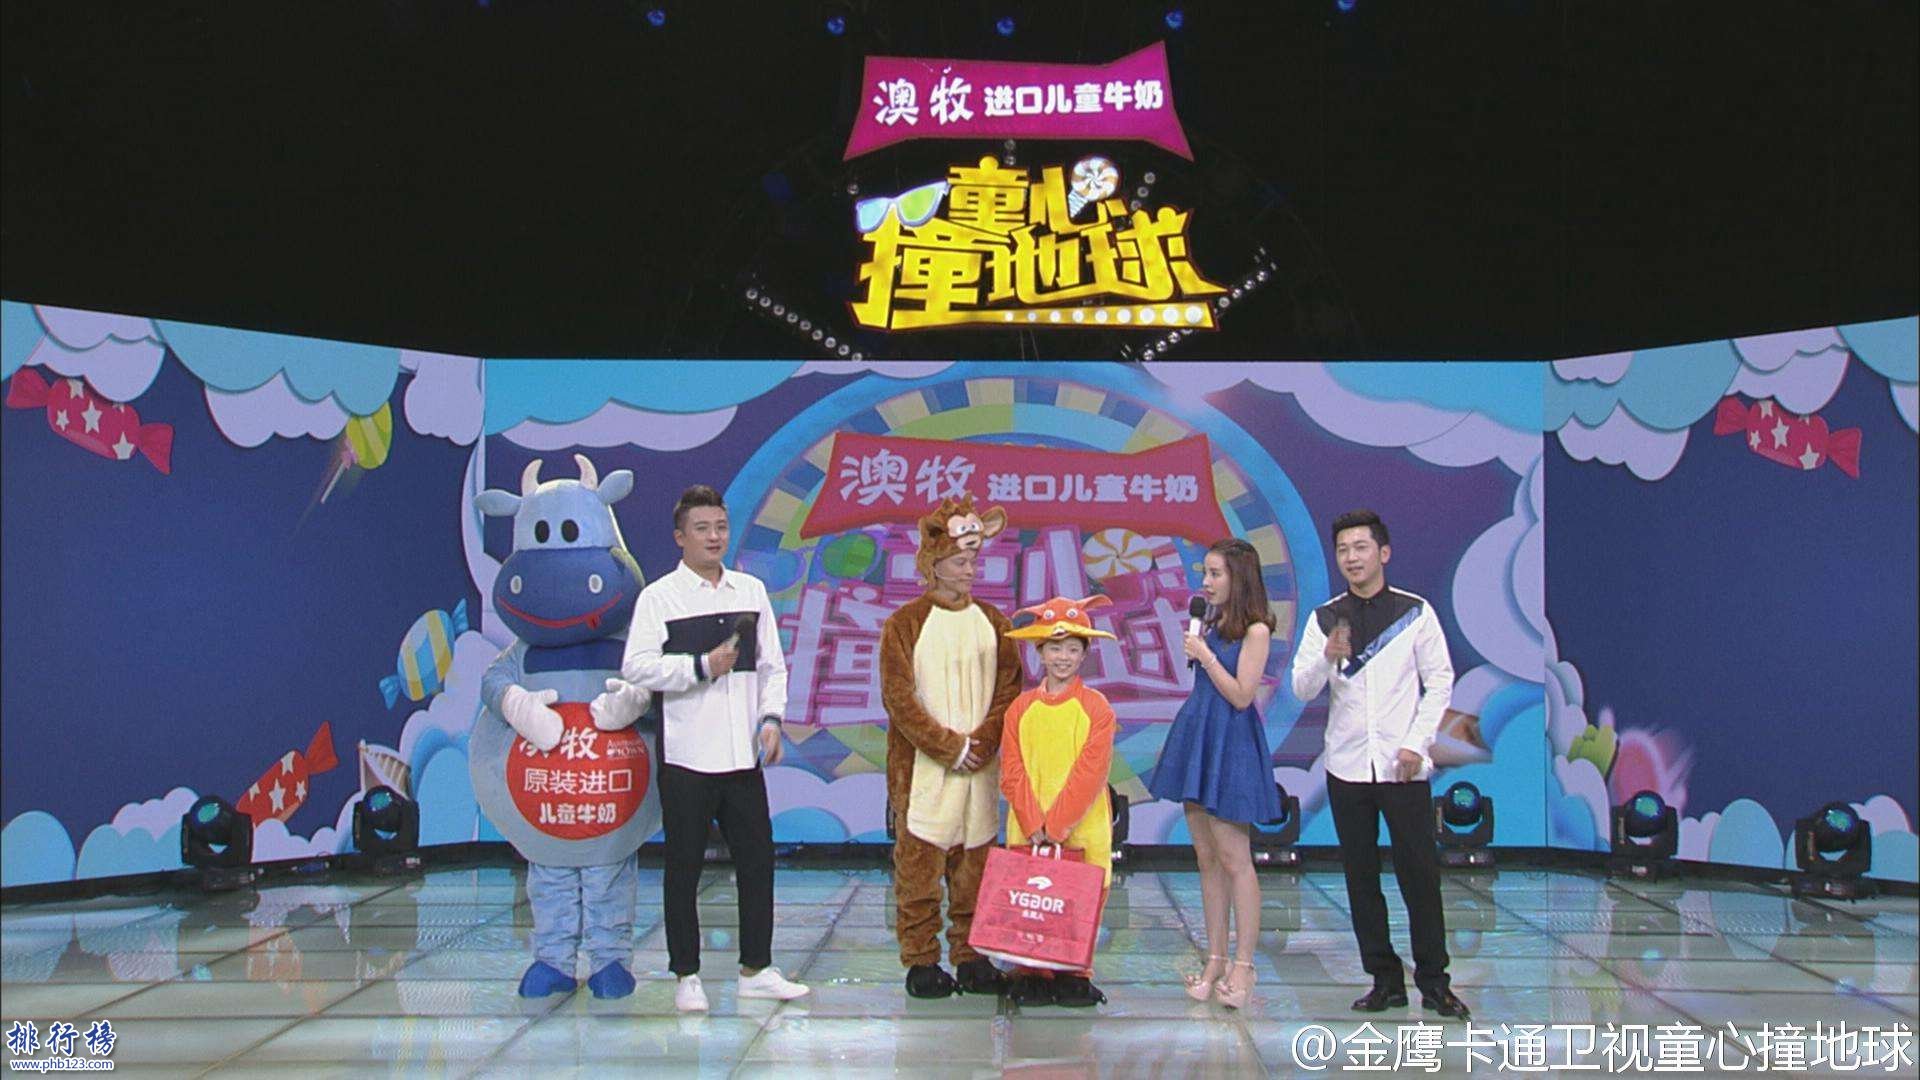 2017年9月5日電視台收視率排行榜,江蘇衛視收視第二湖南衛視收視第三